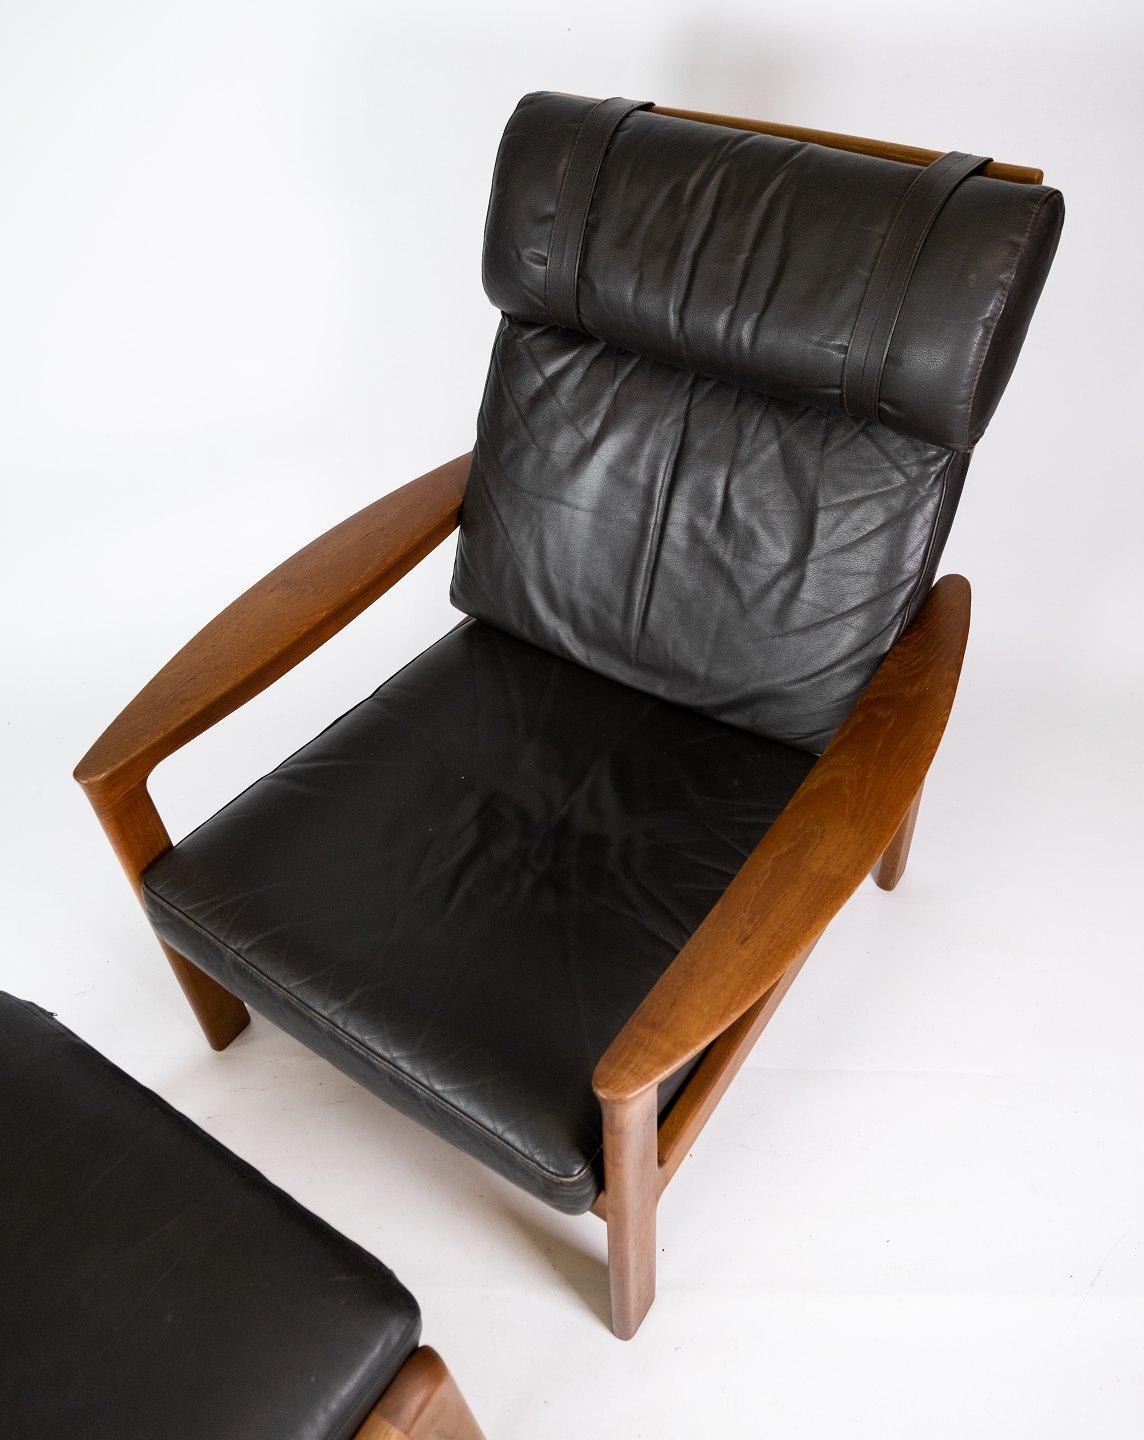 Ce fauteuil et cet ottoman s'intègrent parfaitement dans n'importe quelle pièce grâce à leur design intemporel et à leur qualité de fabrication exceptionnelle. Conçu par le célèbre Arne Vodder et produit par Komfort dans les années 1960, cet